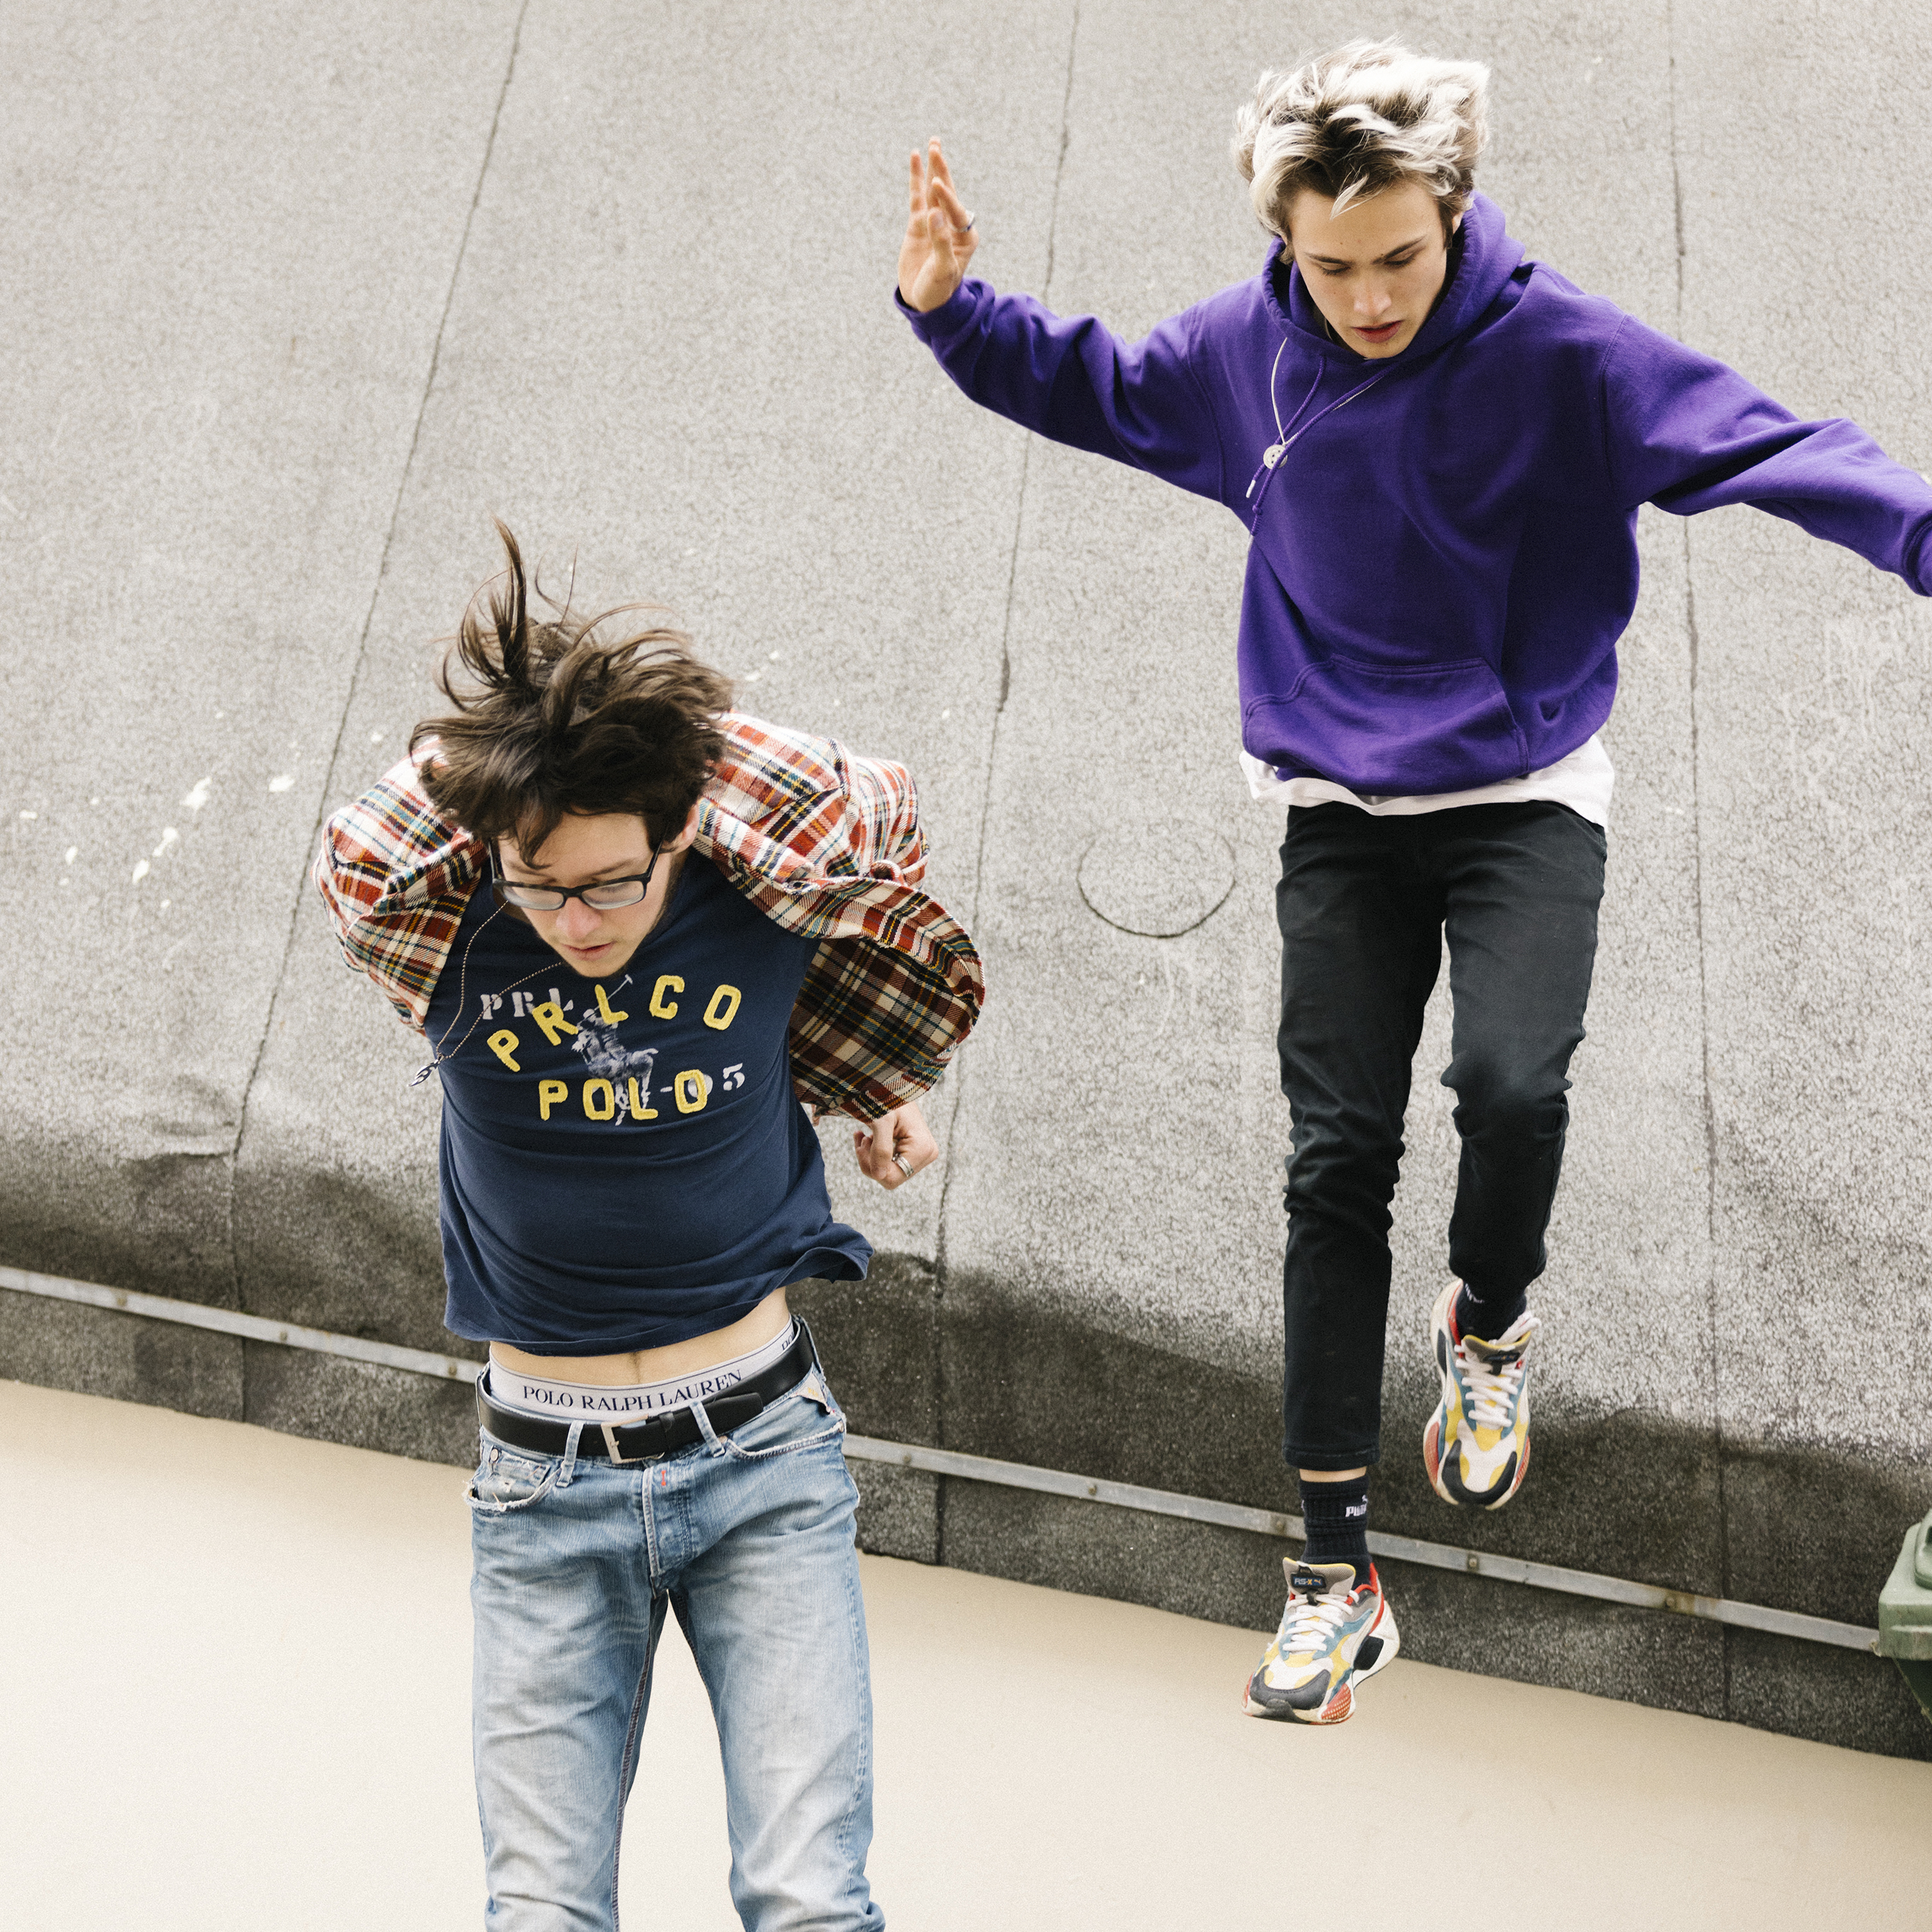 Deux adolescents sautent d’un toit, le regard concentré.